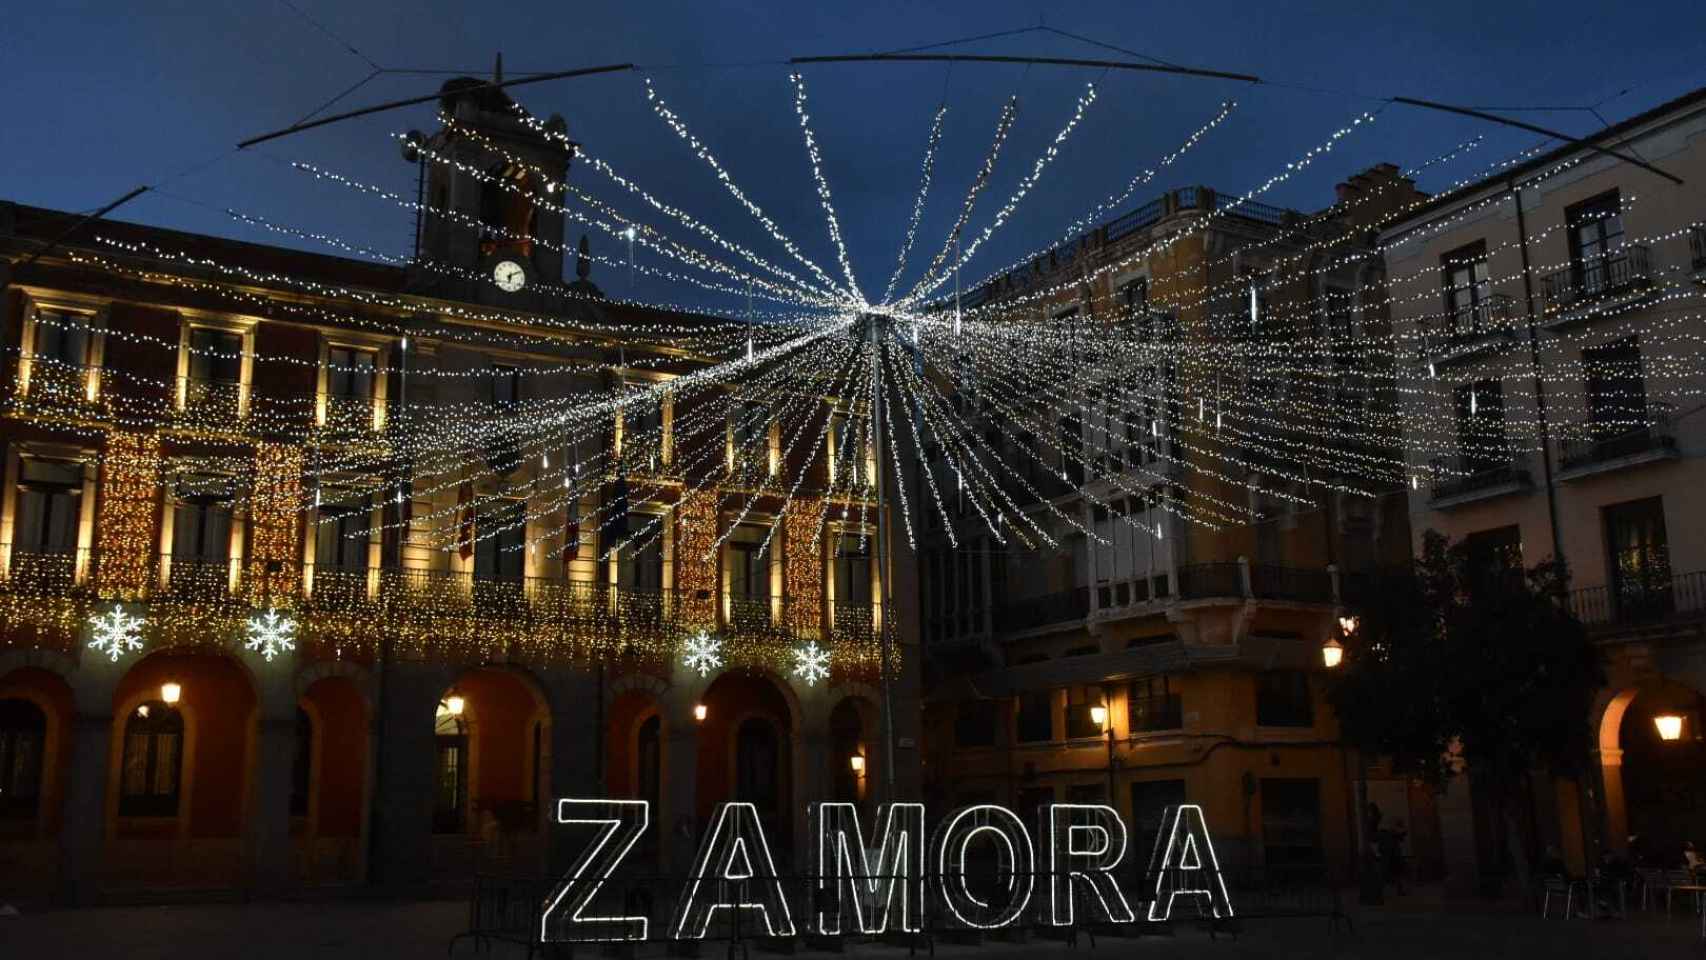 Iluminación navideña de Zamora